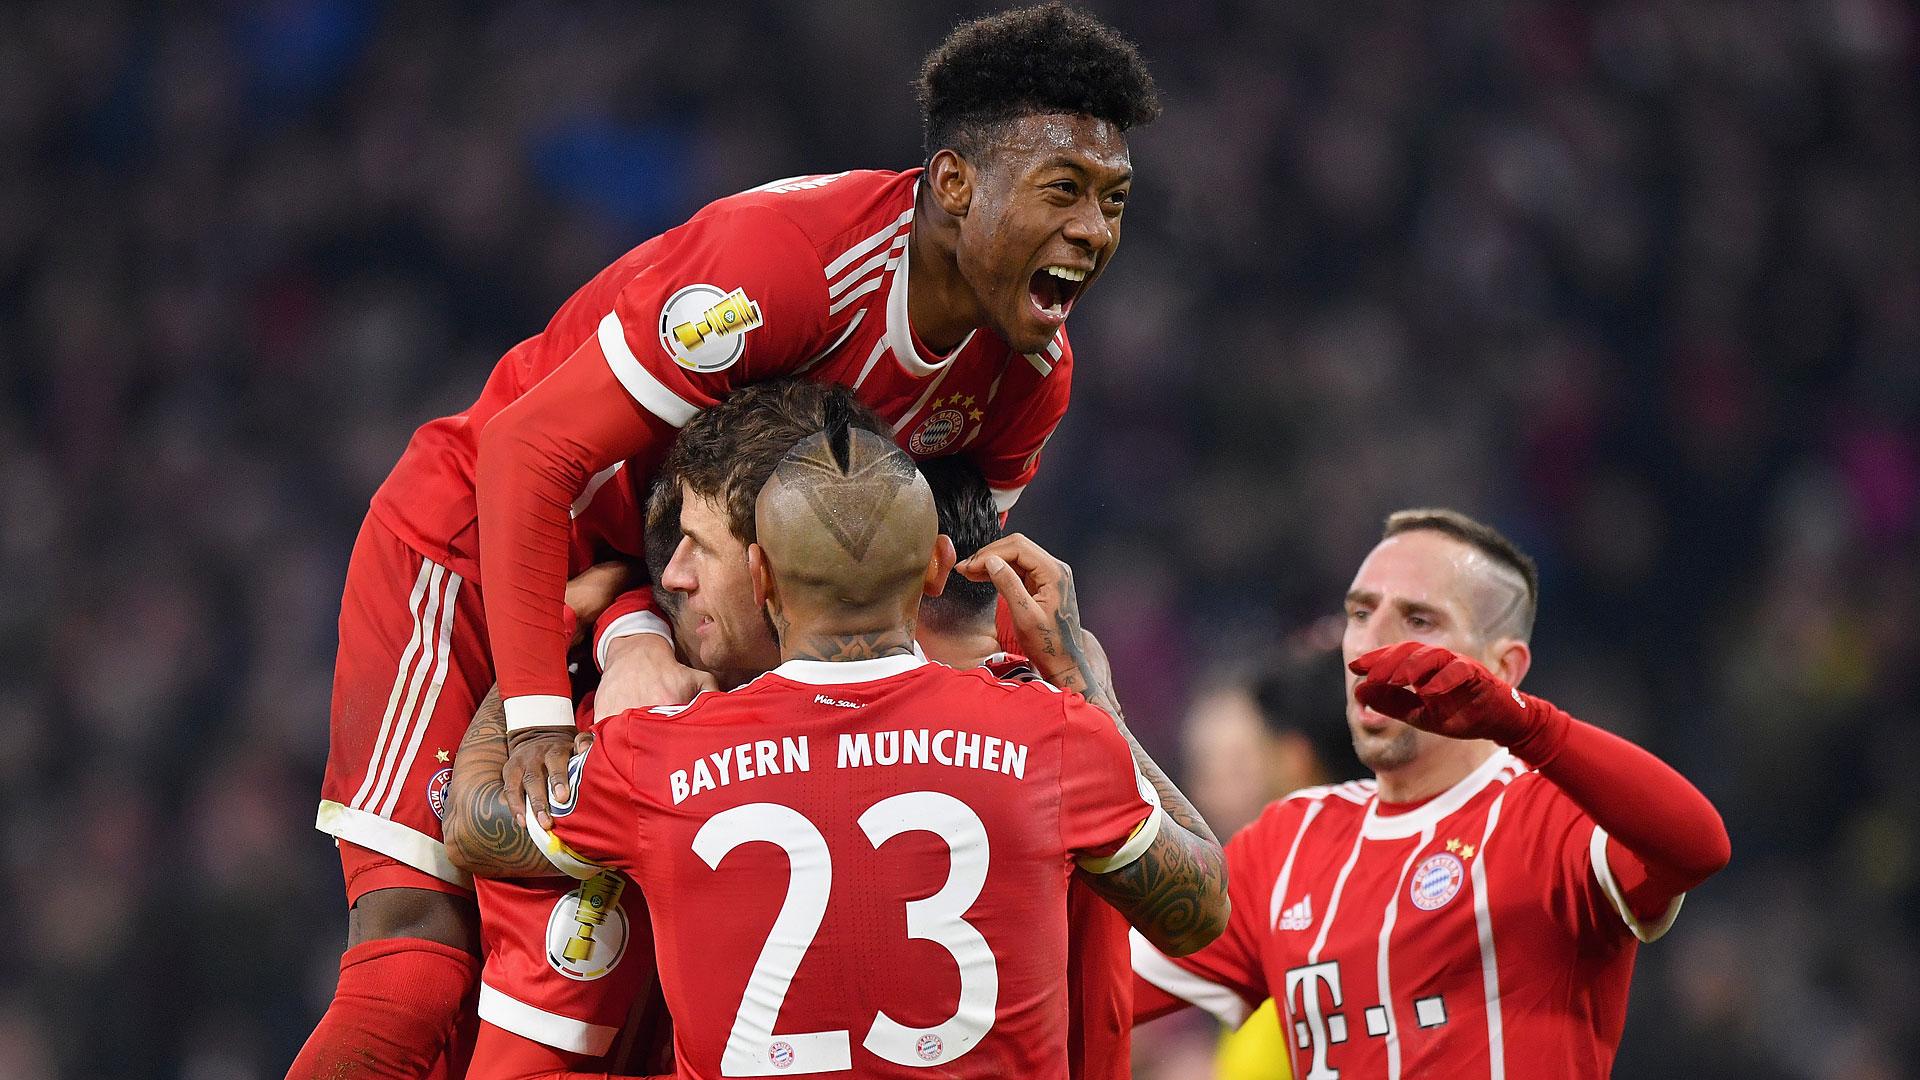 Reds down Dortmund thanks to fine first half Bayern Munich